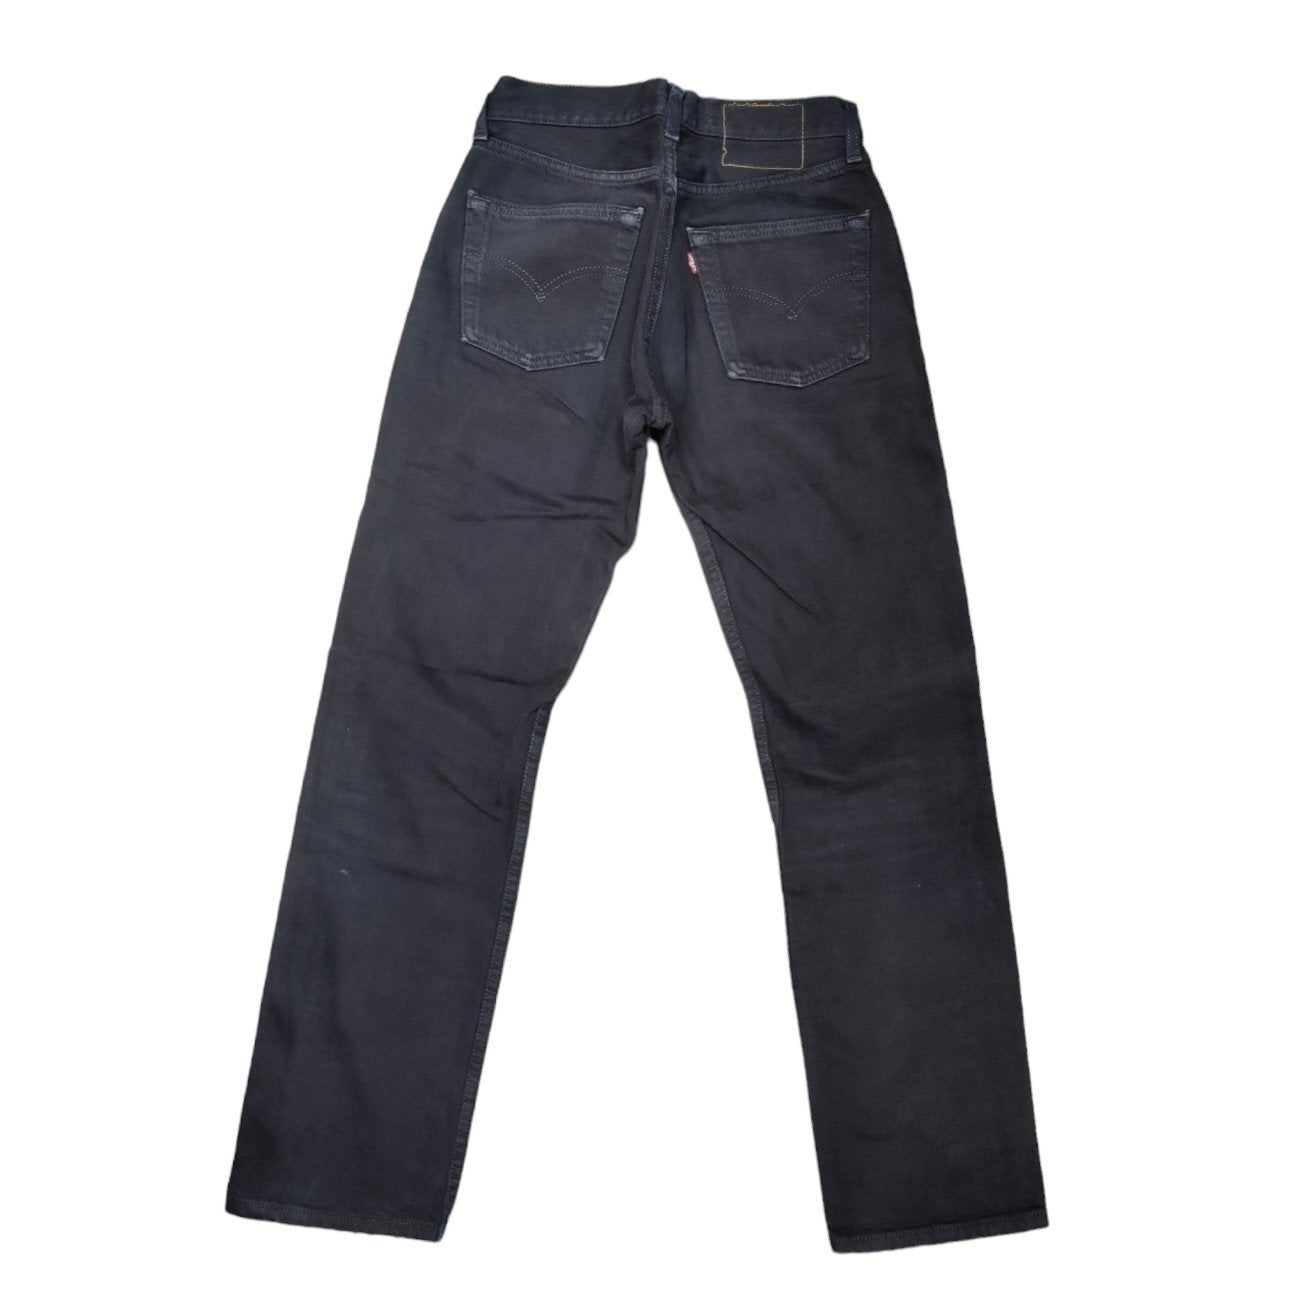 Vintage Levis 501 Navy/Black Jeans (W27/L30)